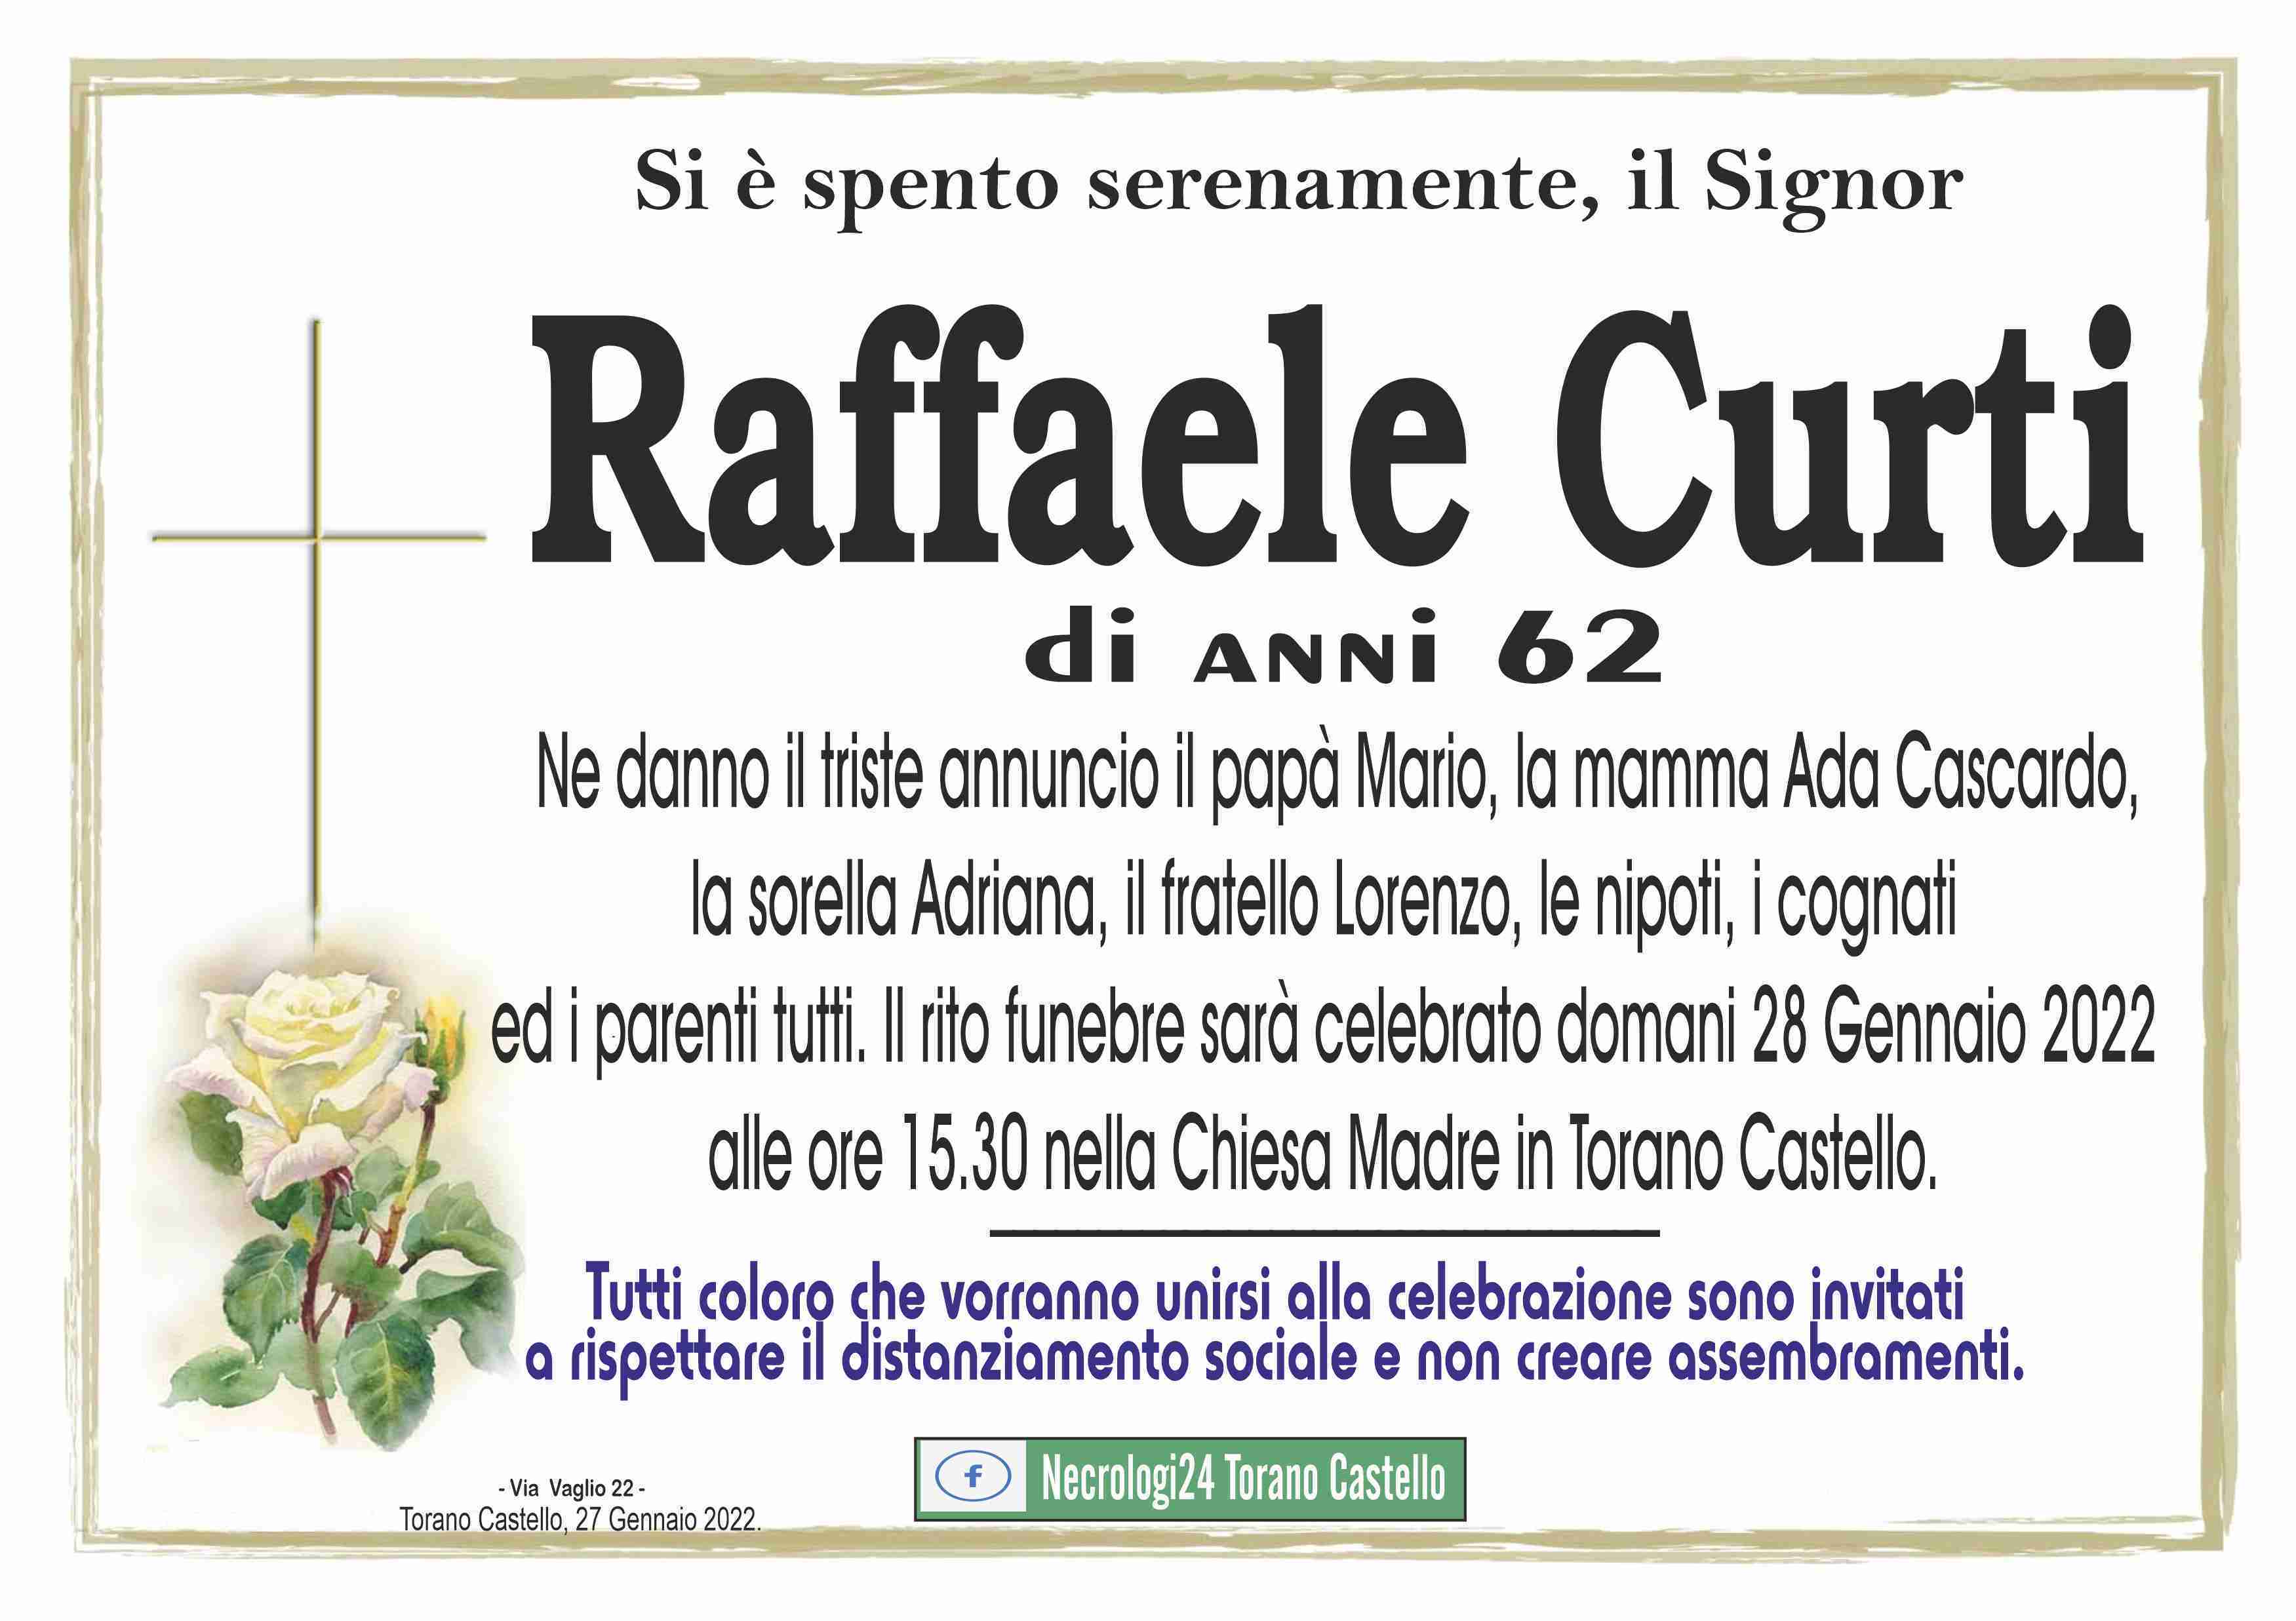 Raffaele Curti